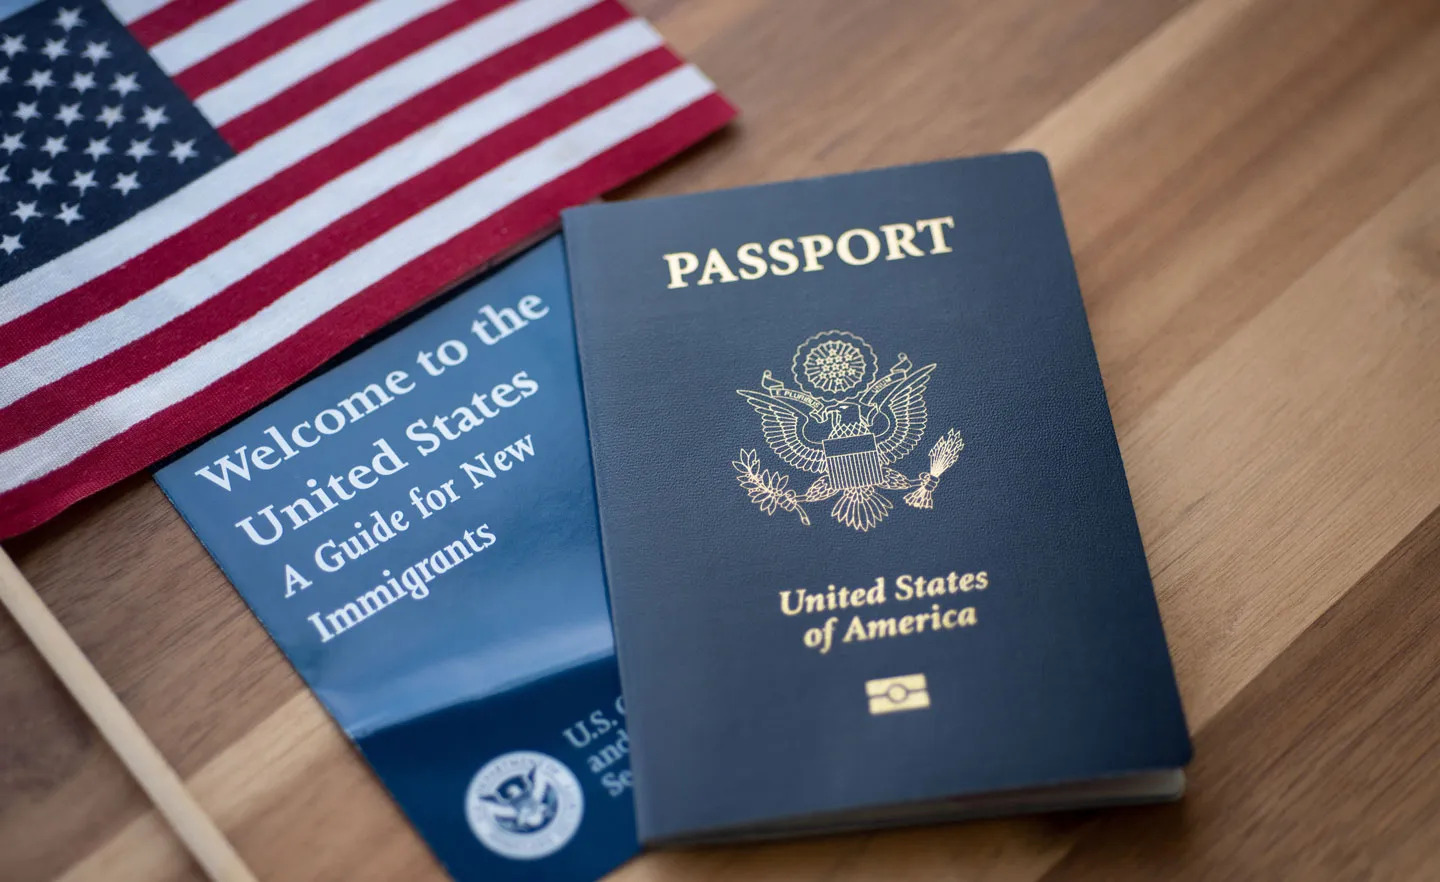 British Passport - A1 Passport & Visa services, New York